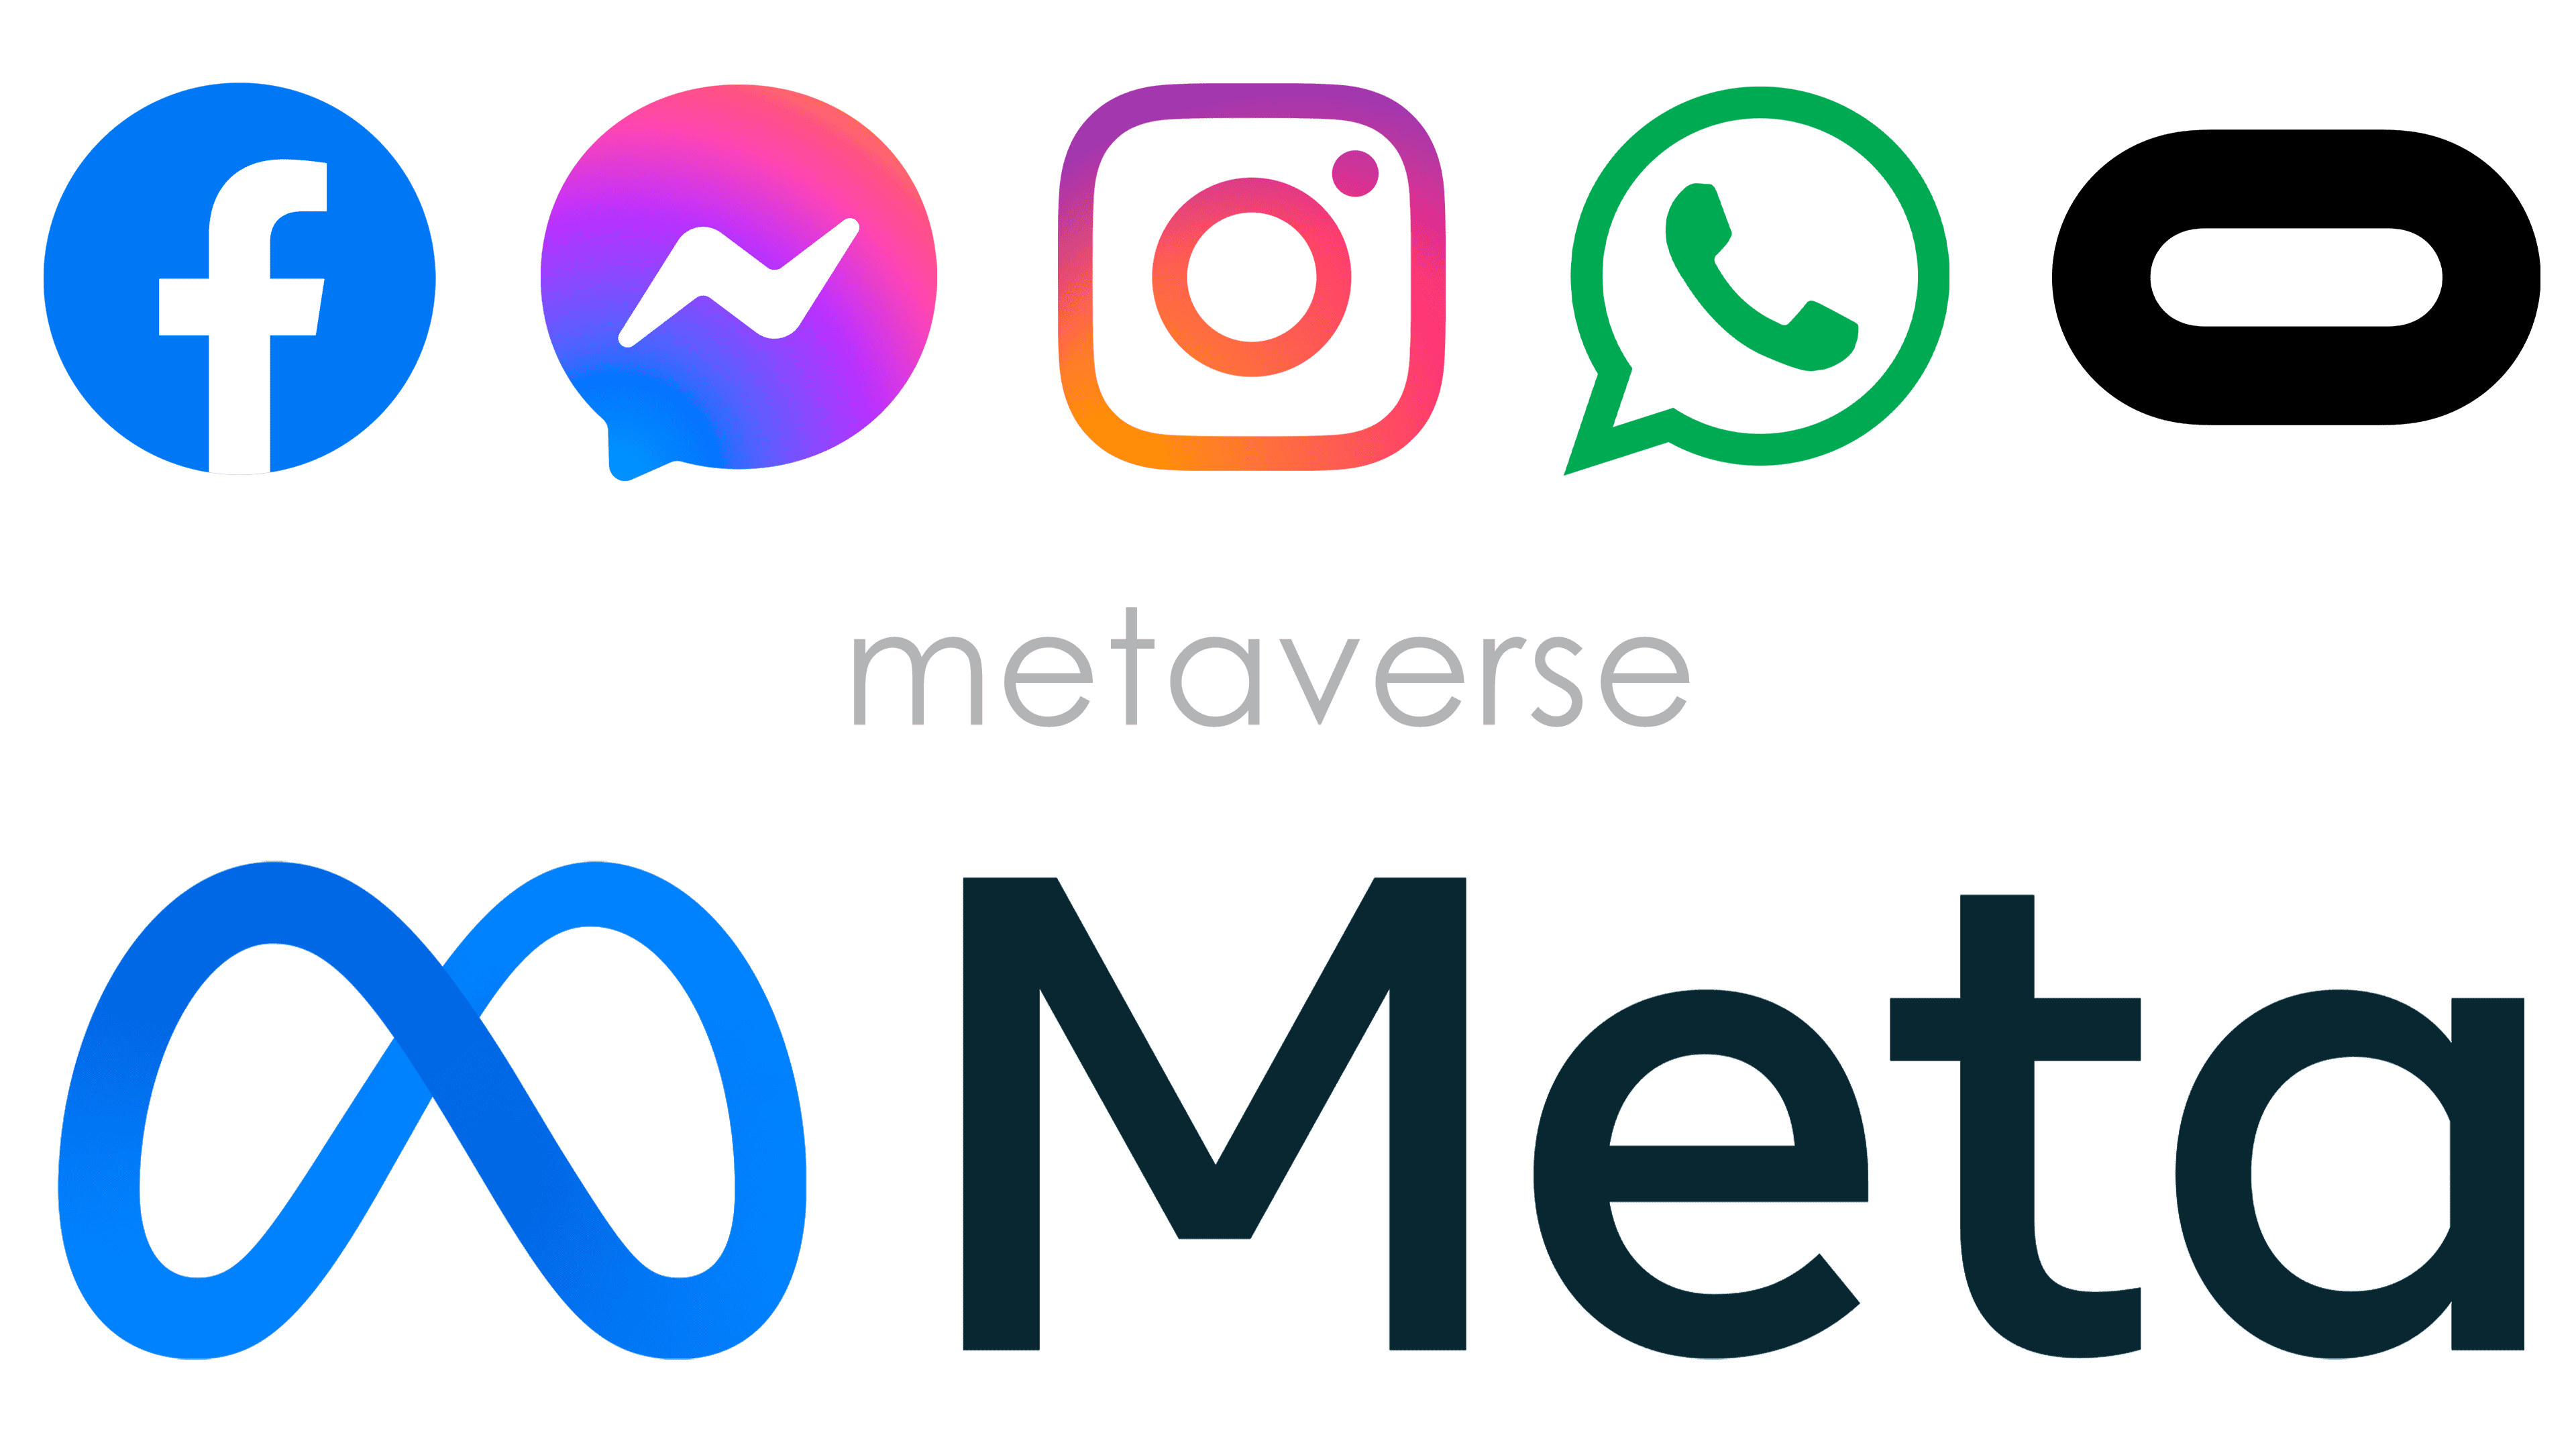 Meta metaverse Logo